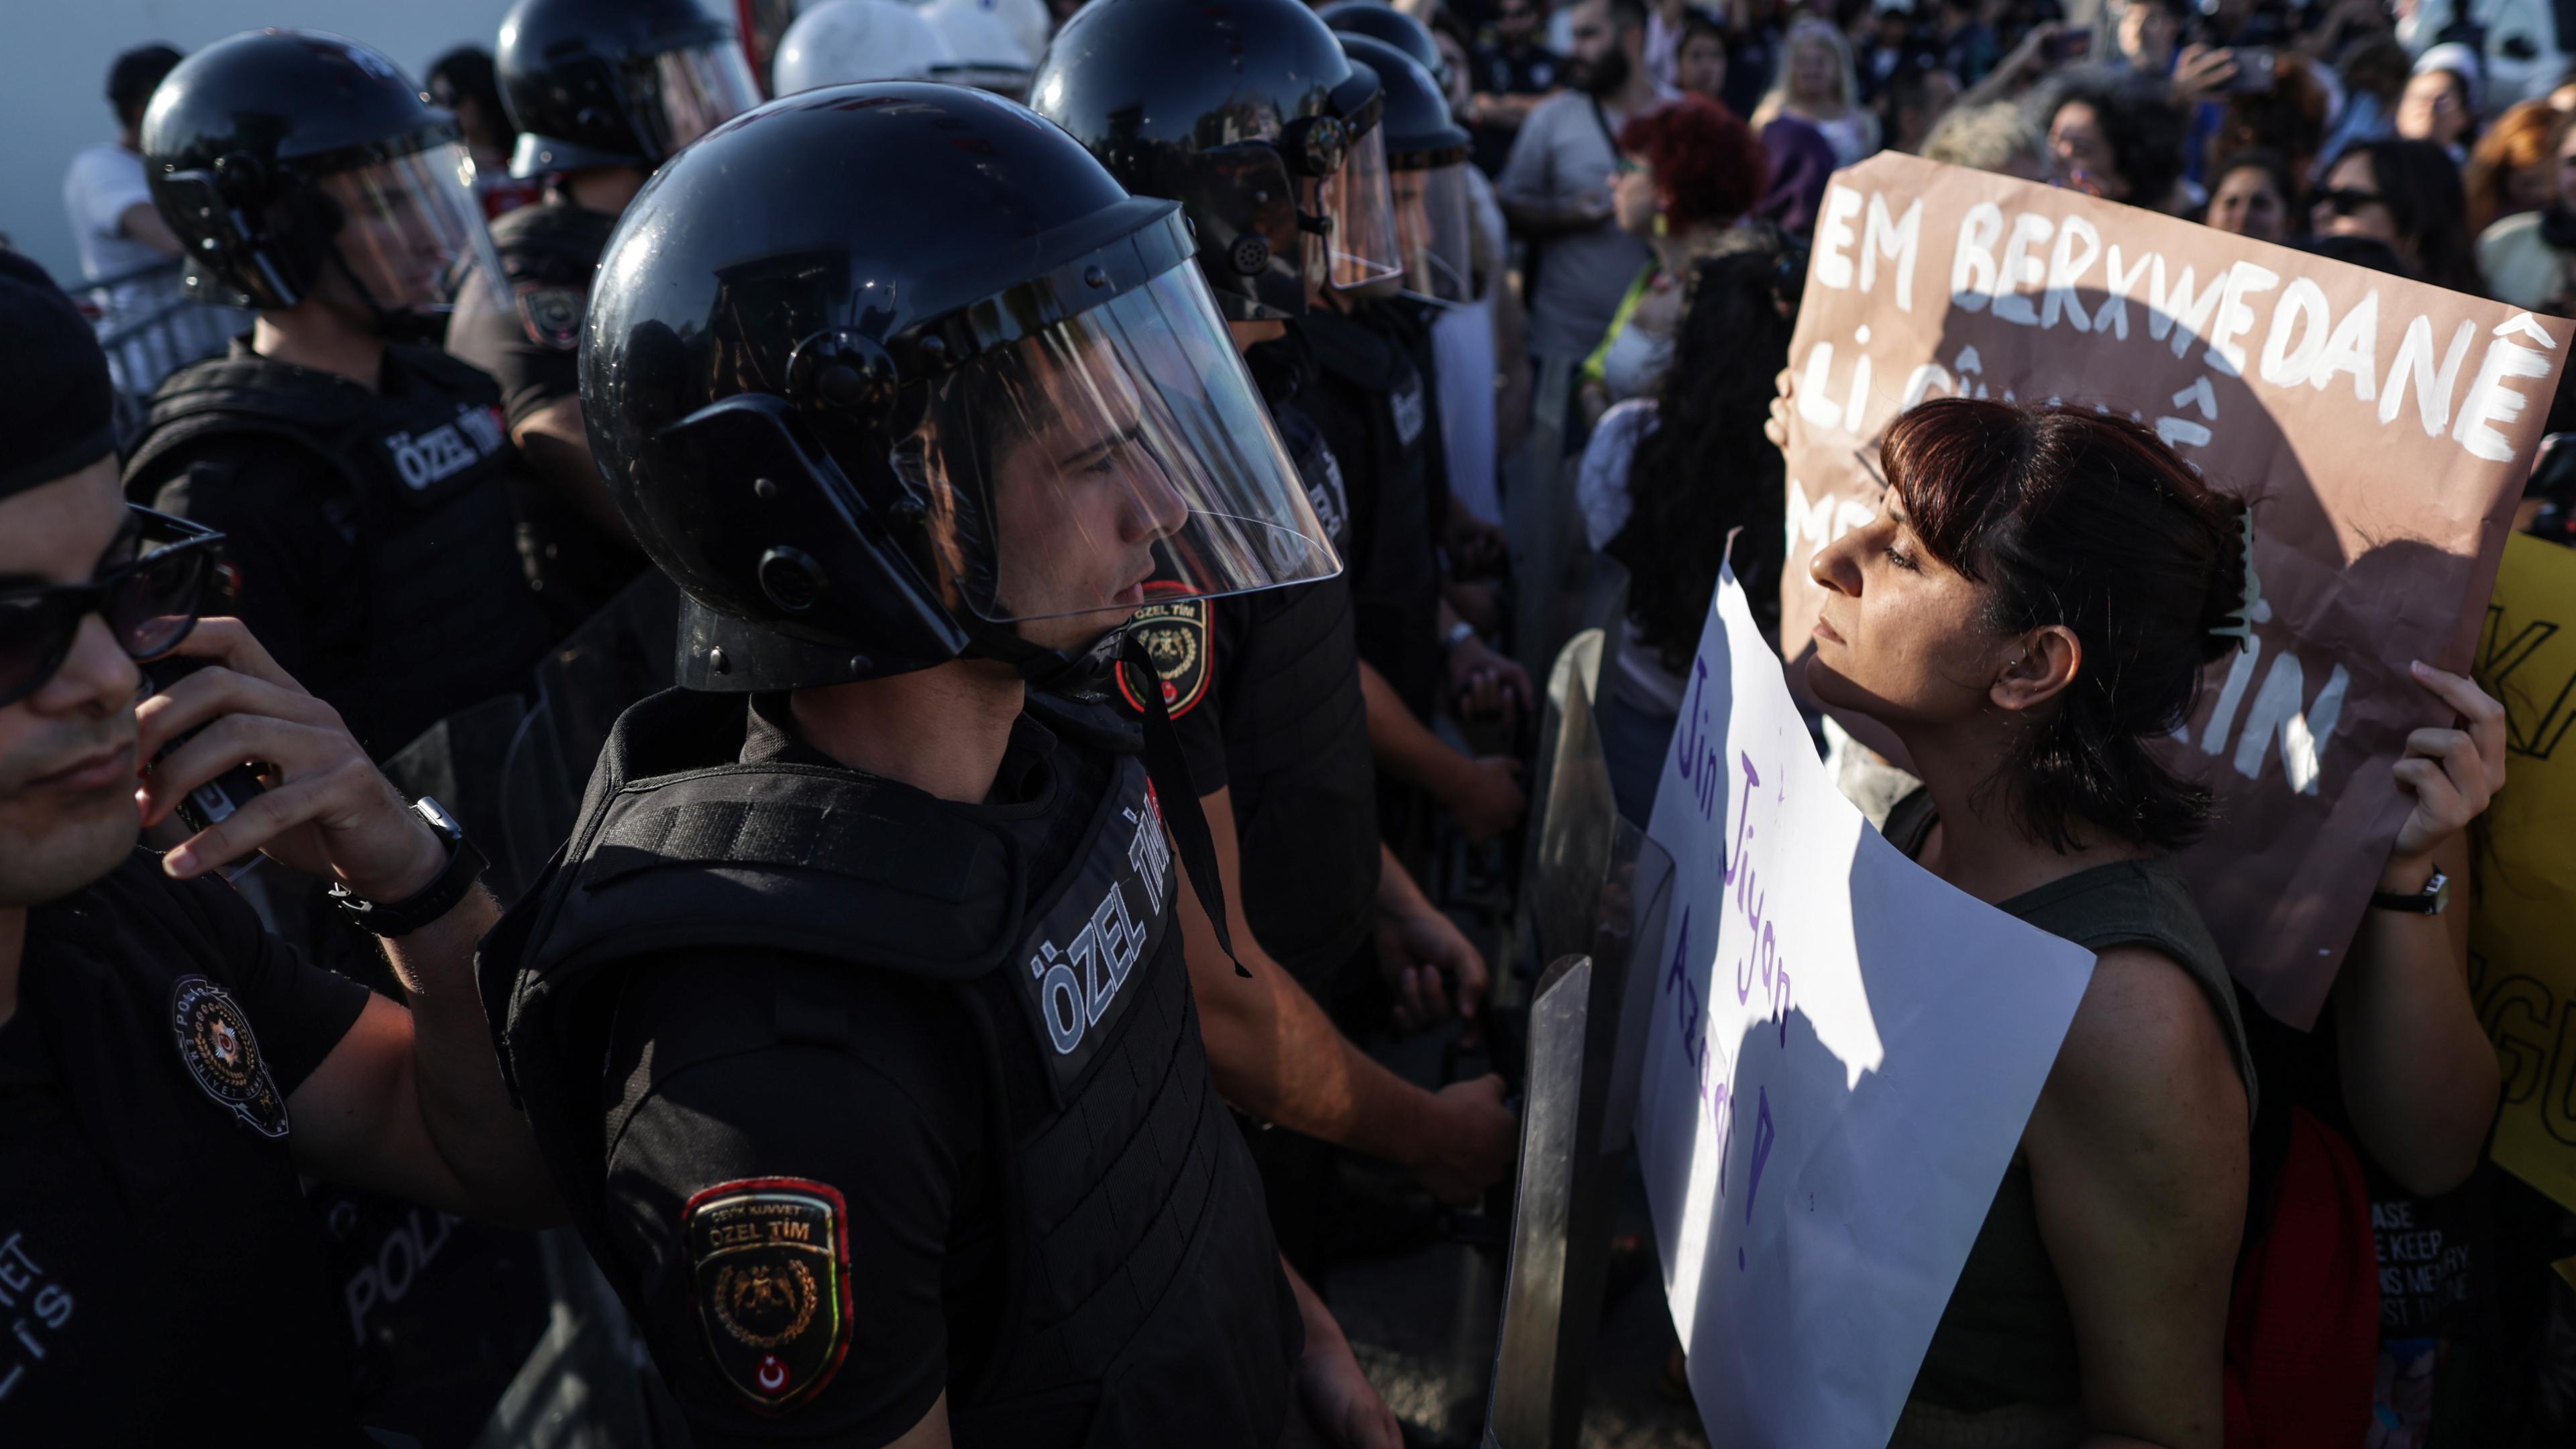 Man sieht eine Demonstrantin vor einem Polizisten.